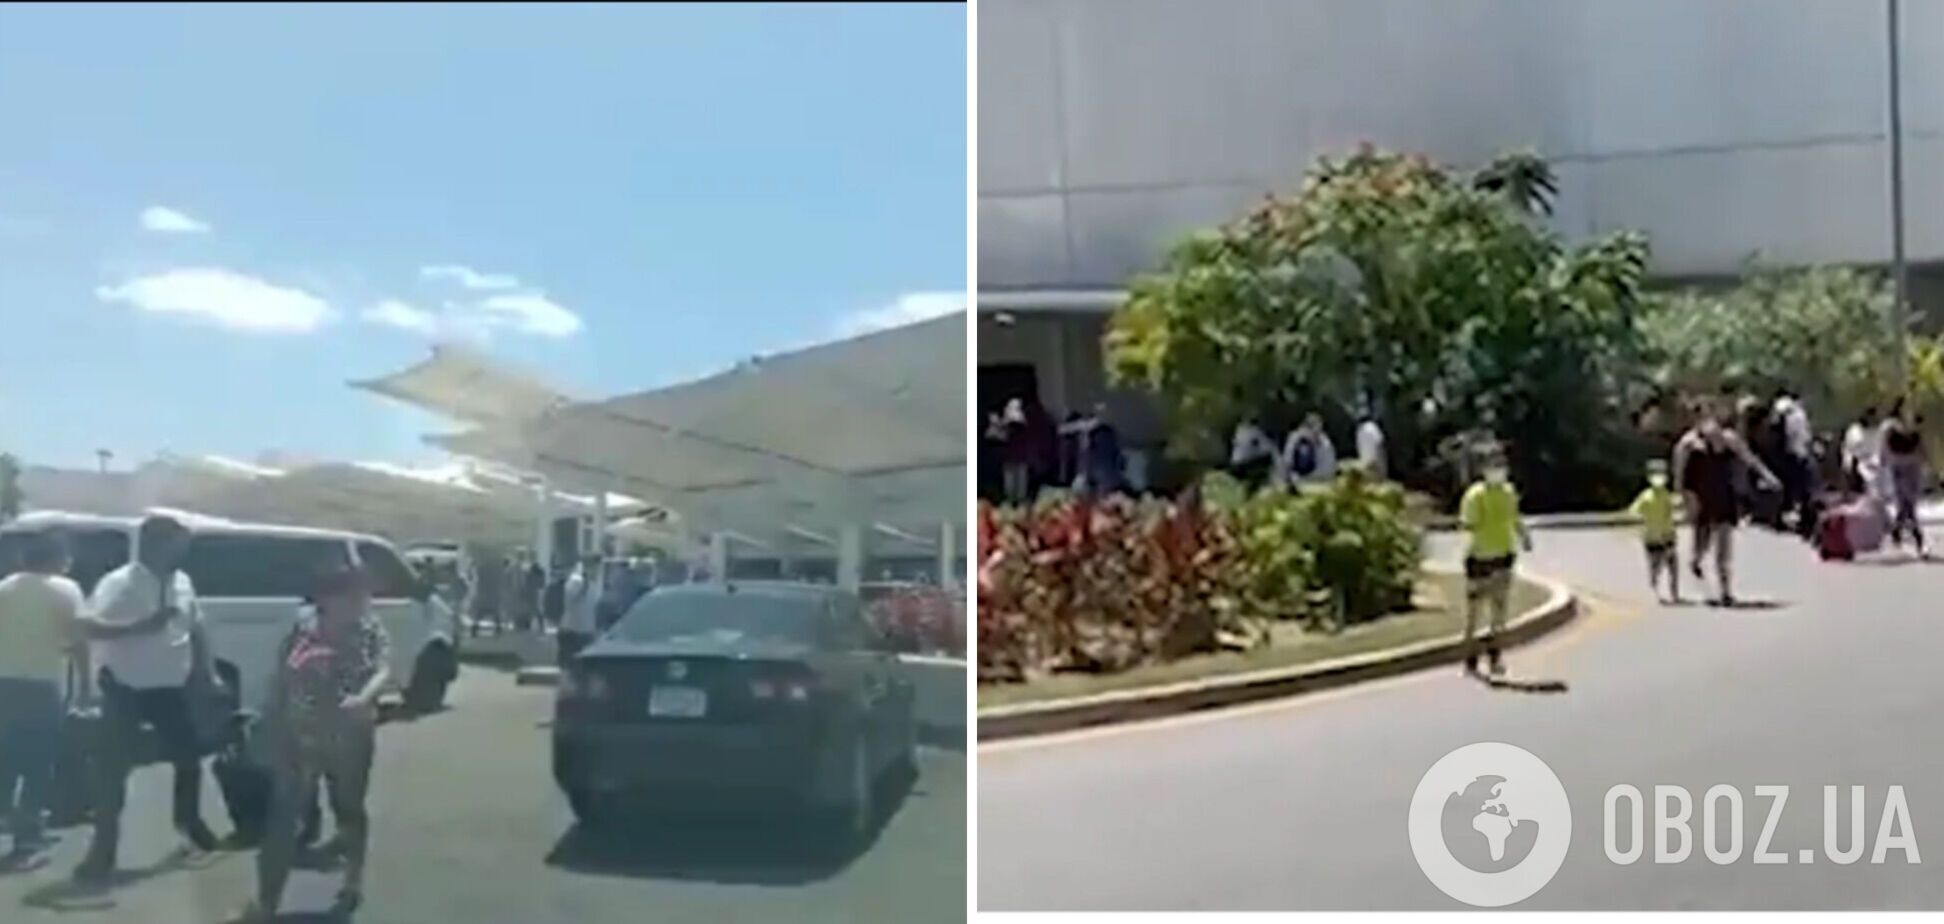 В Мексике в аэропорту Канкуна началась паника и давка из-за якобы звуков выстрелов. Видео